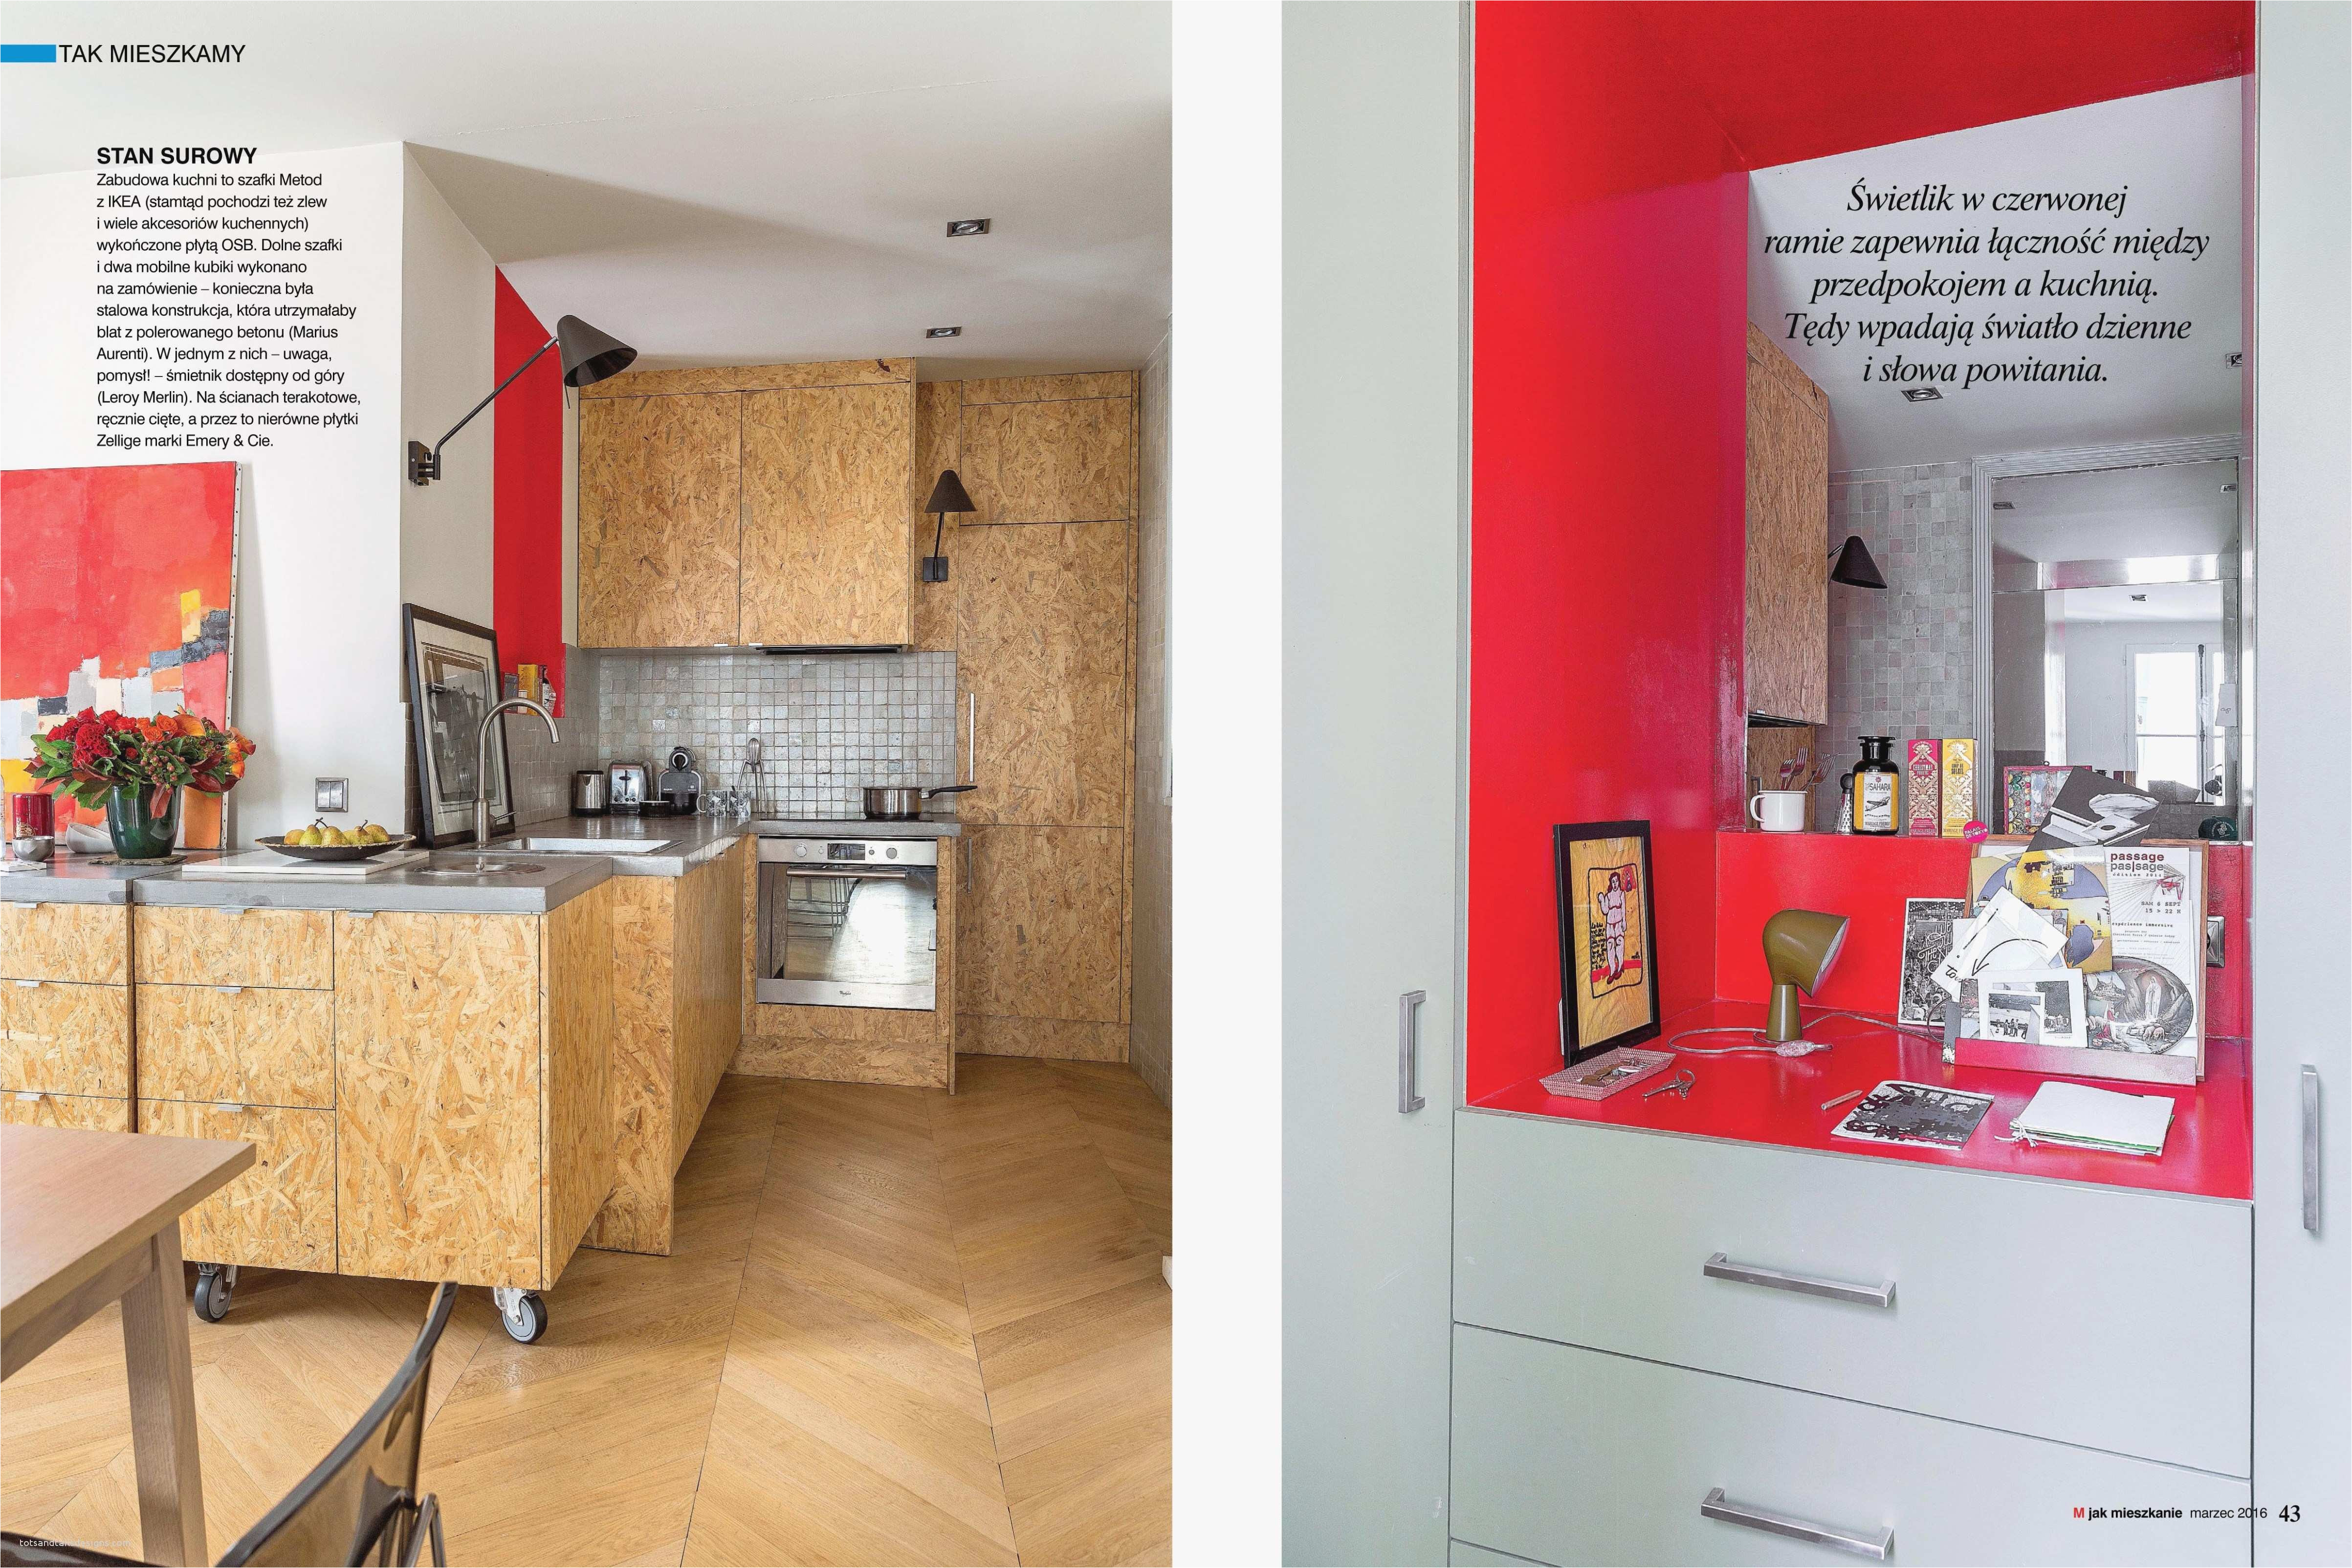 remarkable corner kitchen cabinet storage ideas with kitchen cupboard storage solutions ikea elegant ikea corner cabinet